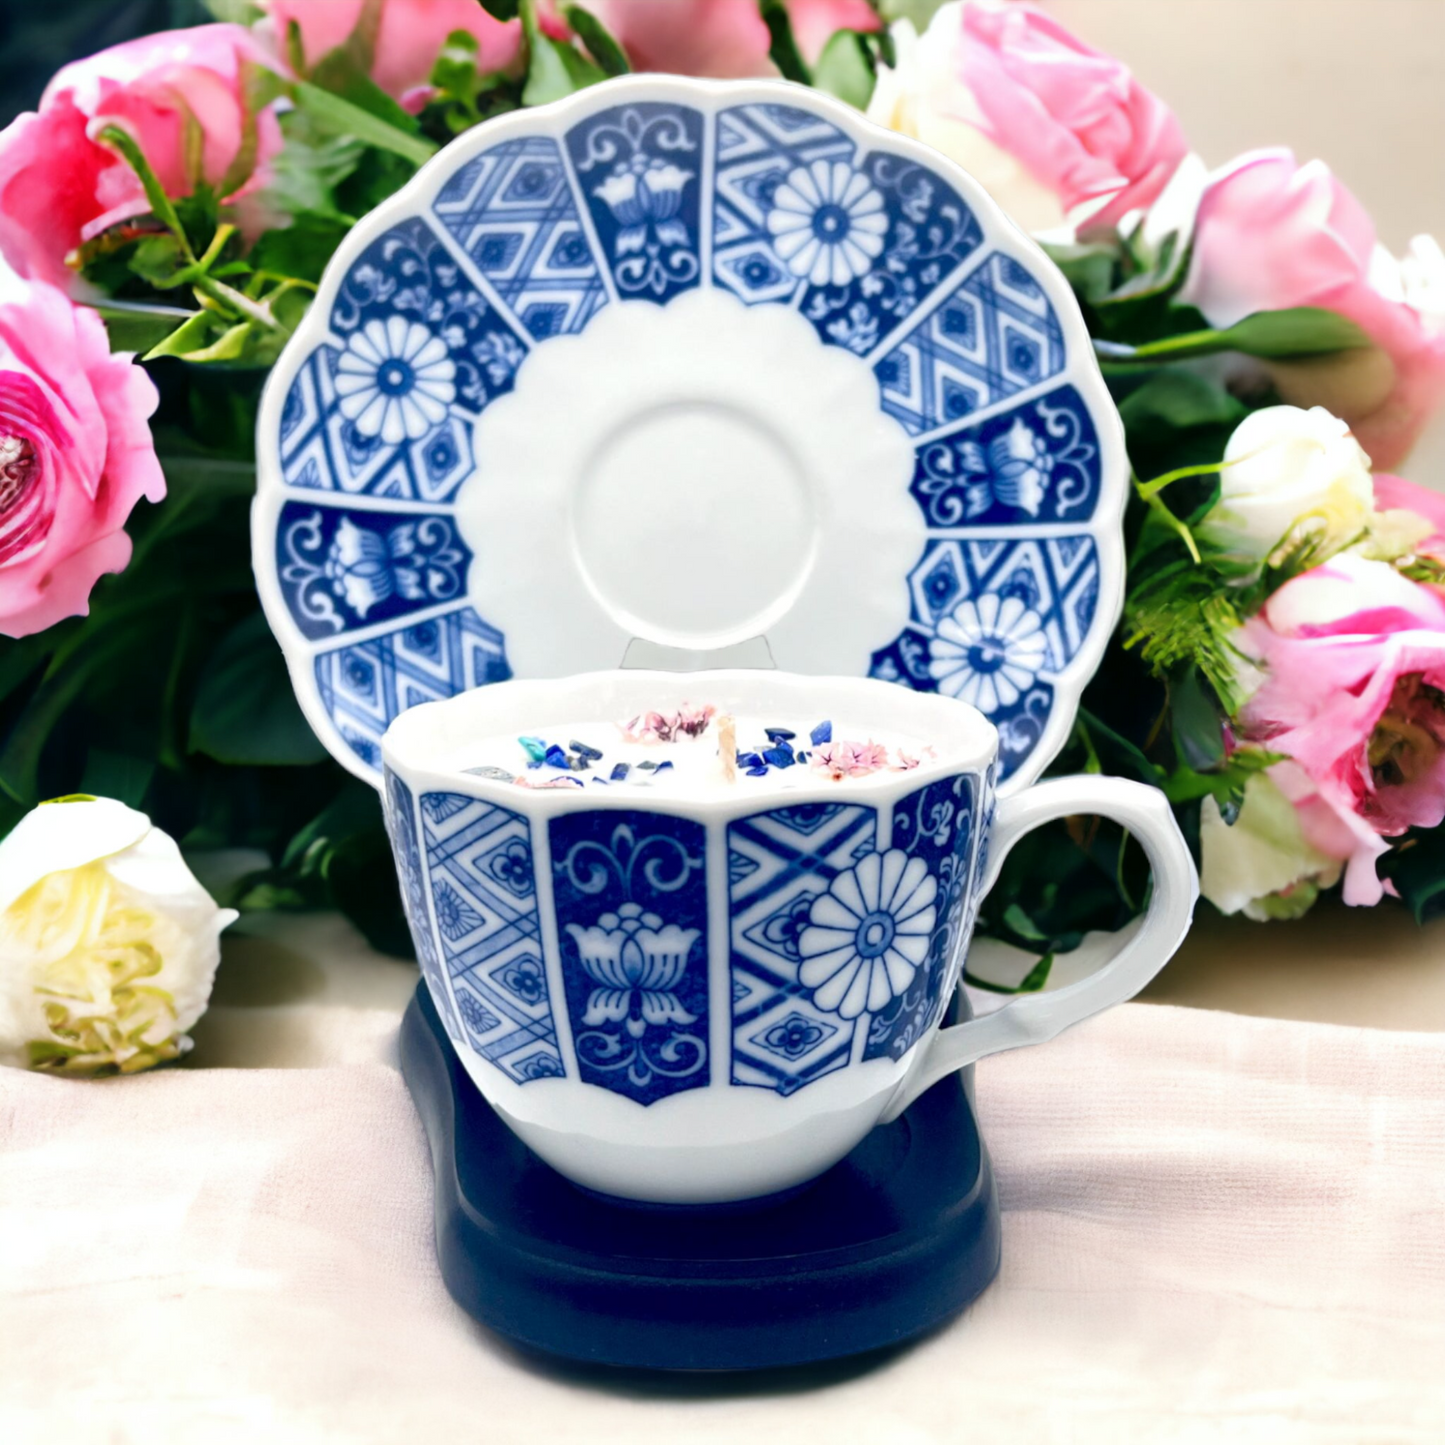 Japanese Blue Imari Mosaic Vintage Teacup Candle